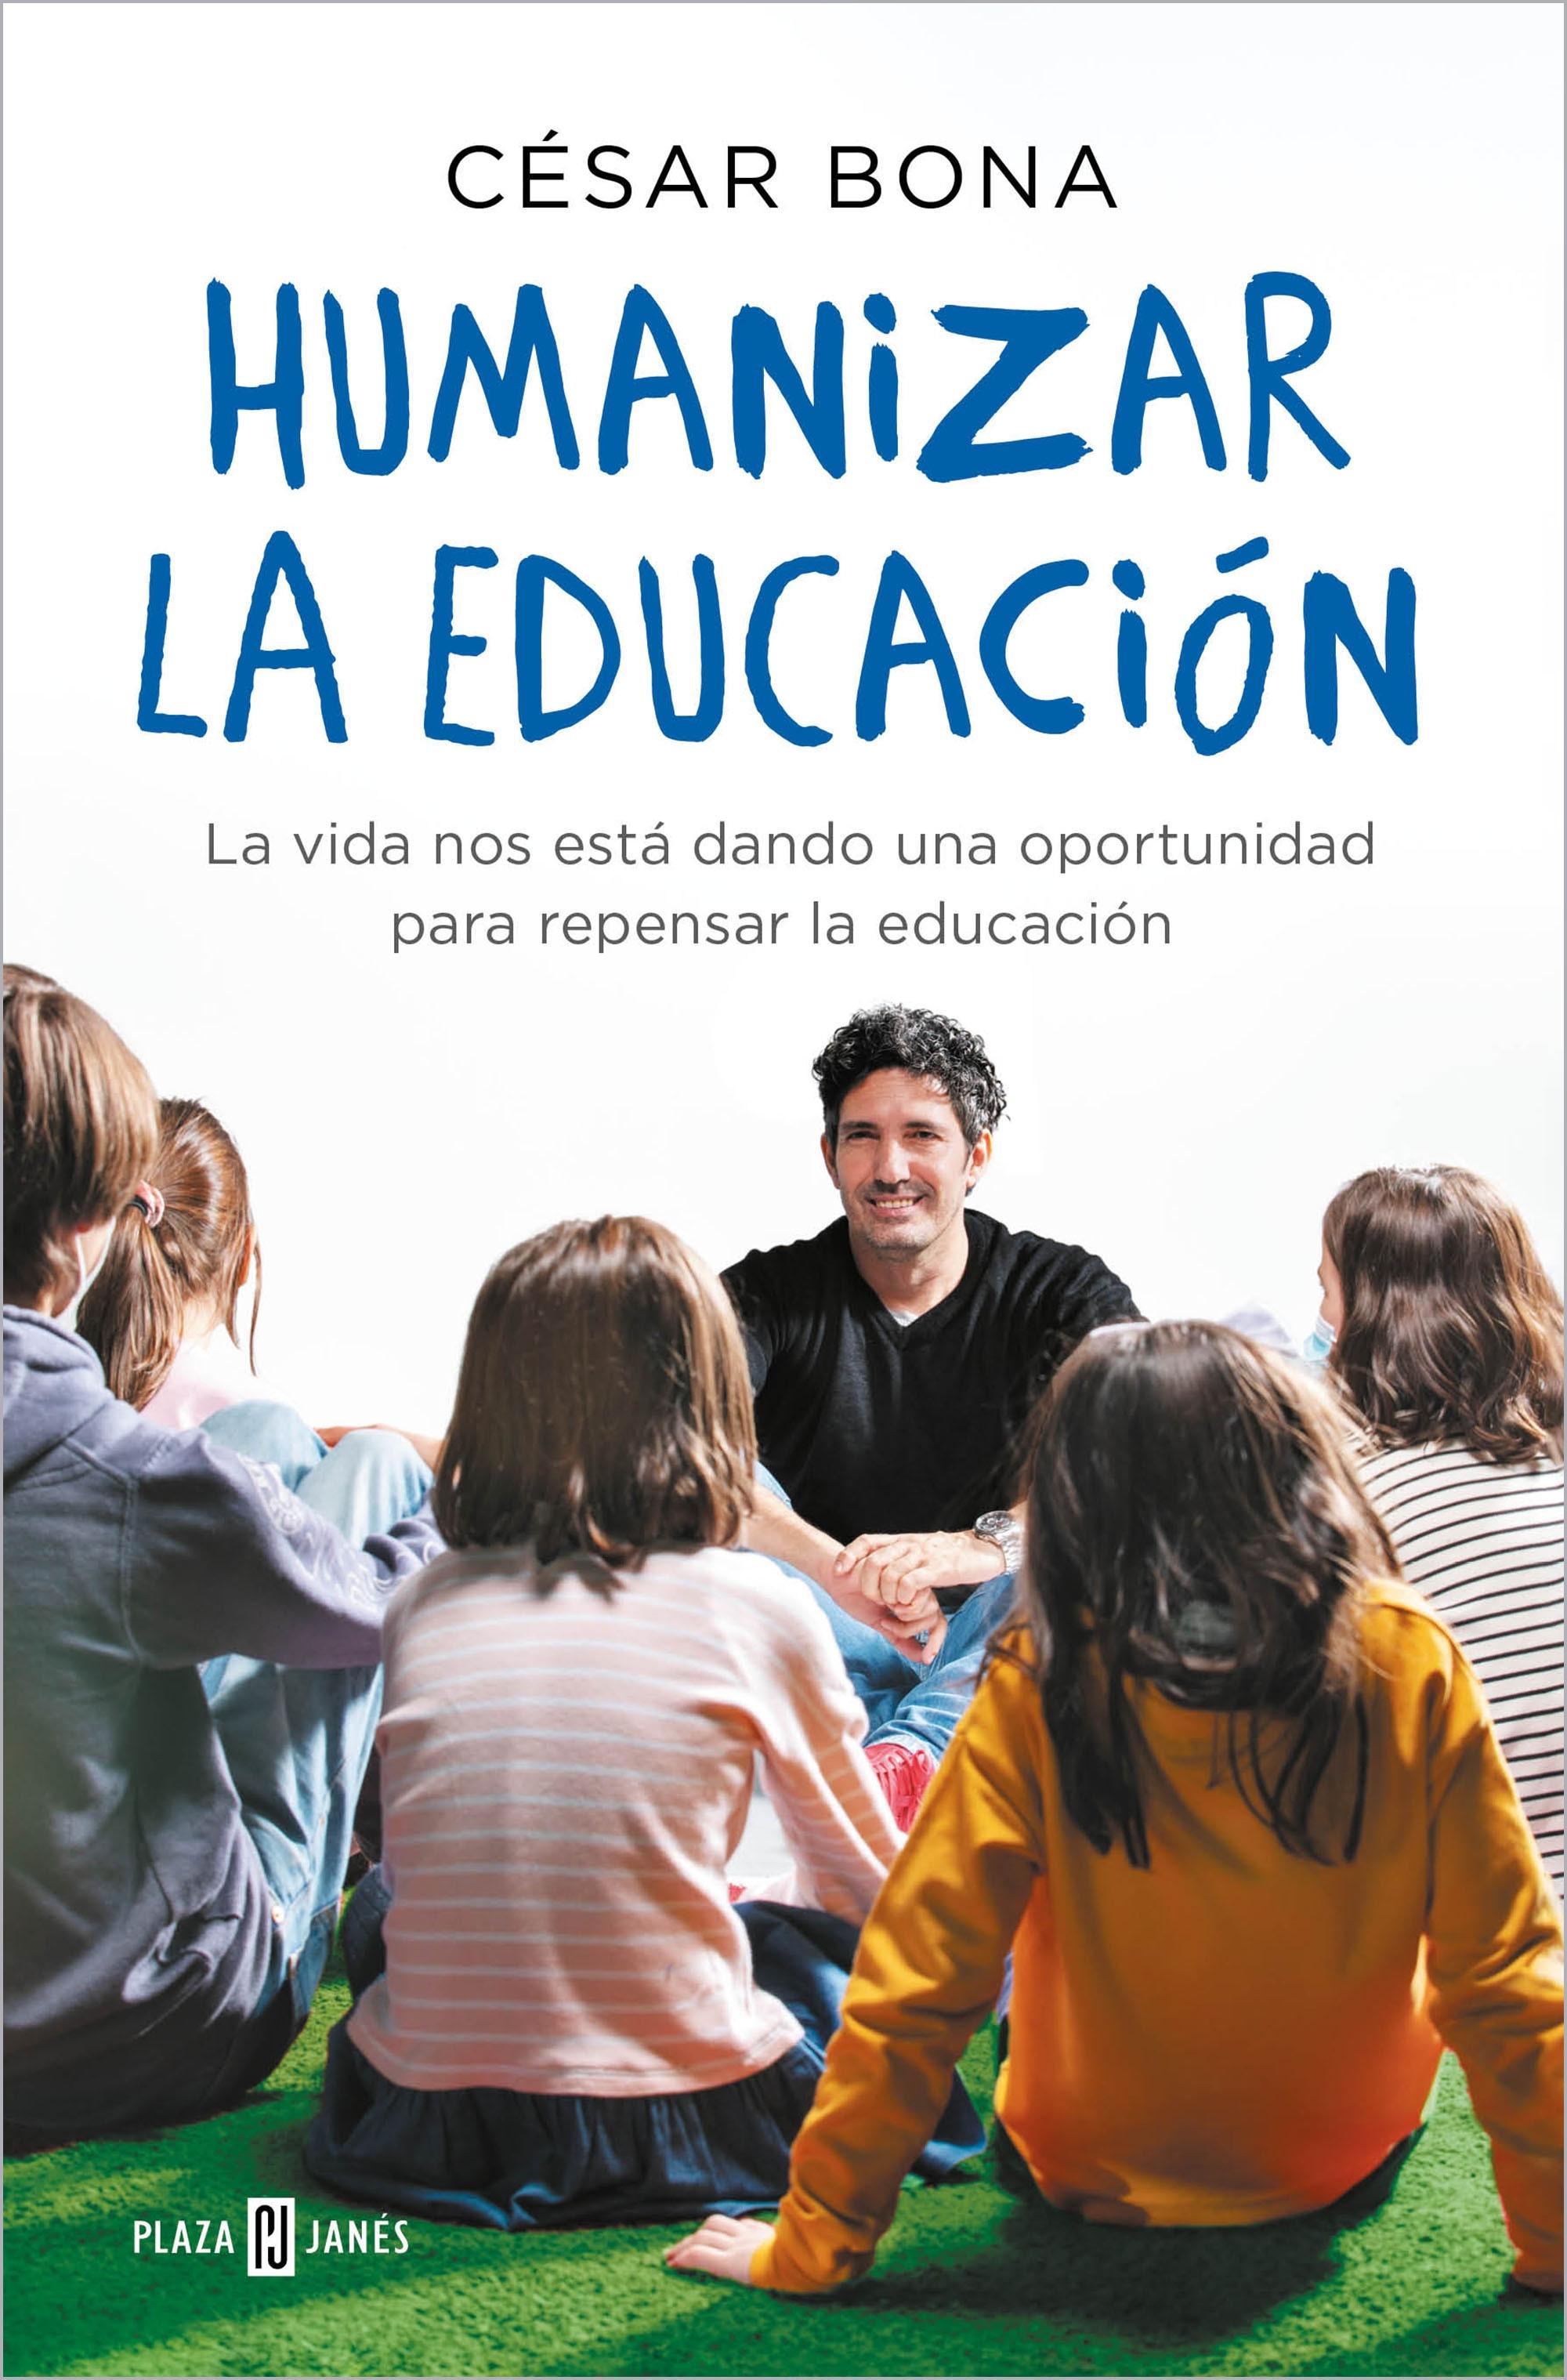 Humanizar la educación "La vida nos está dando una oportunidad para repensar la educación". 